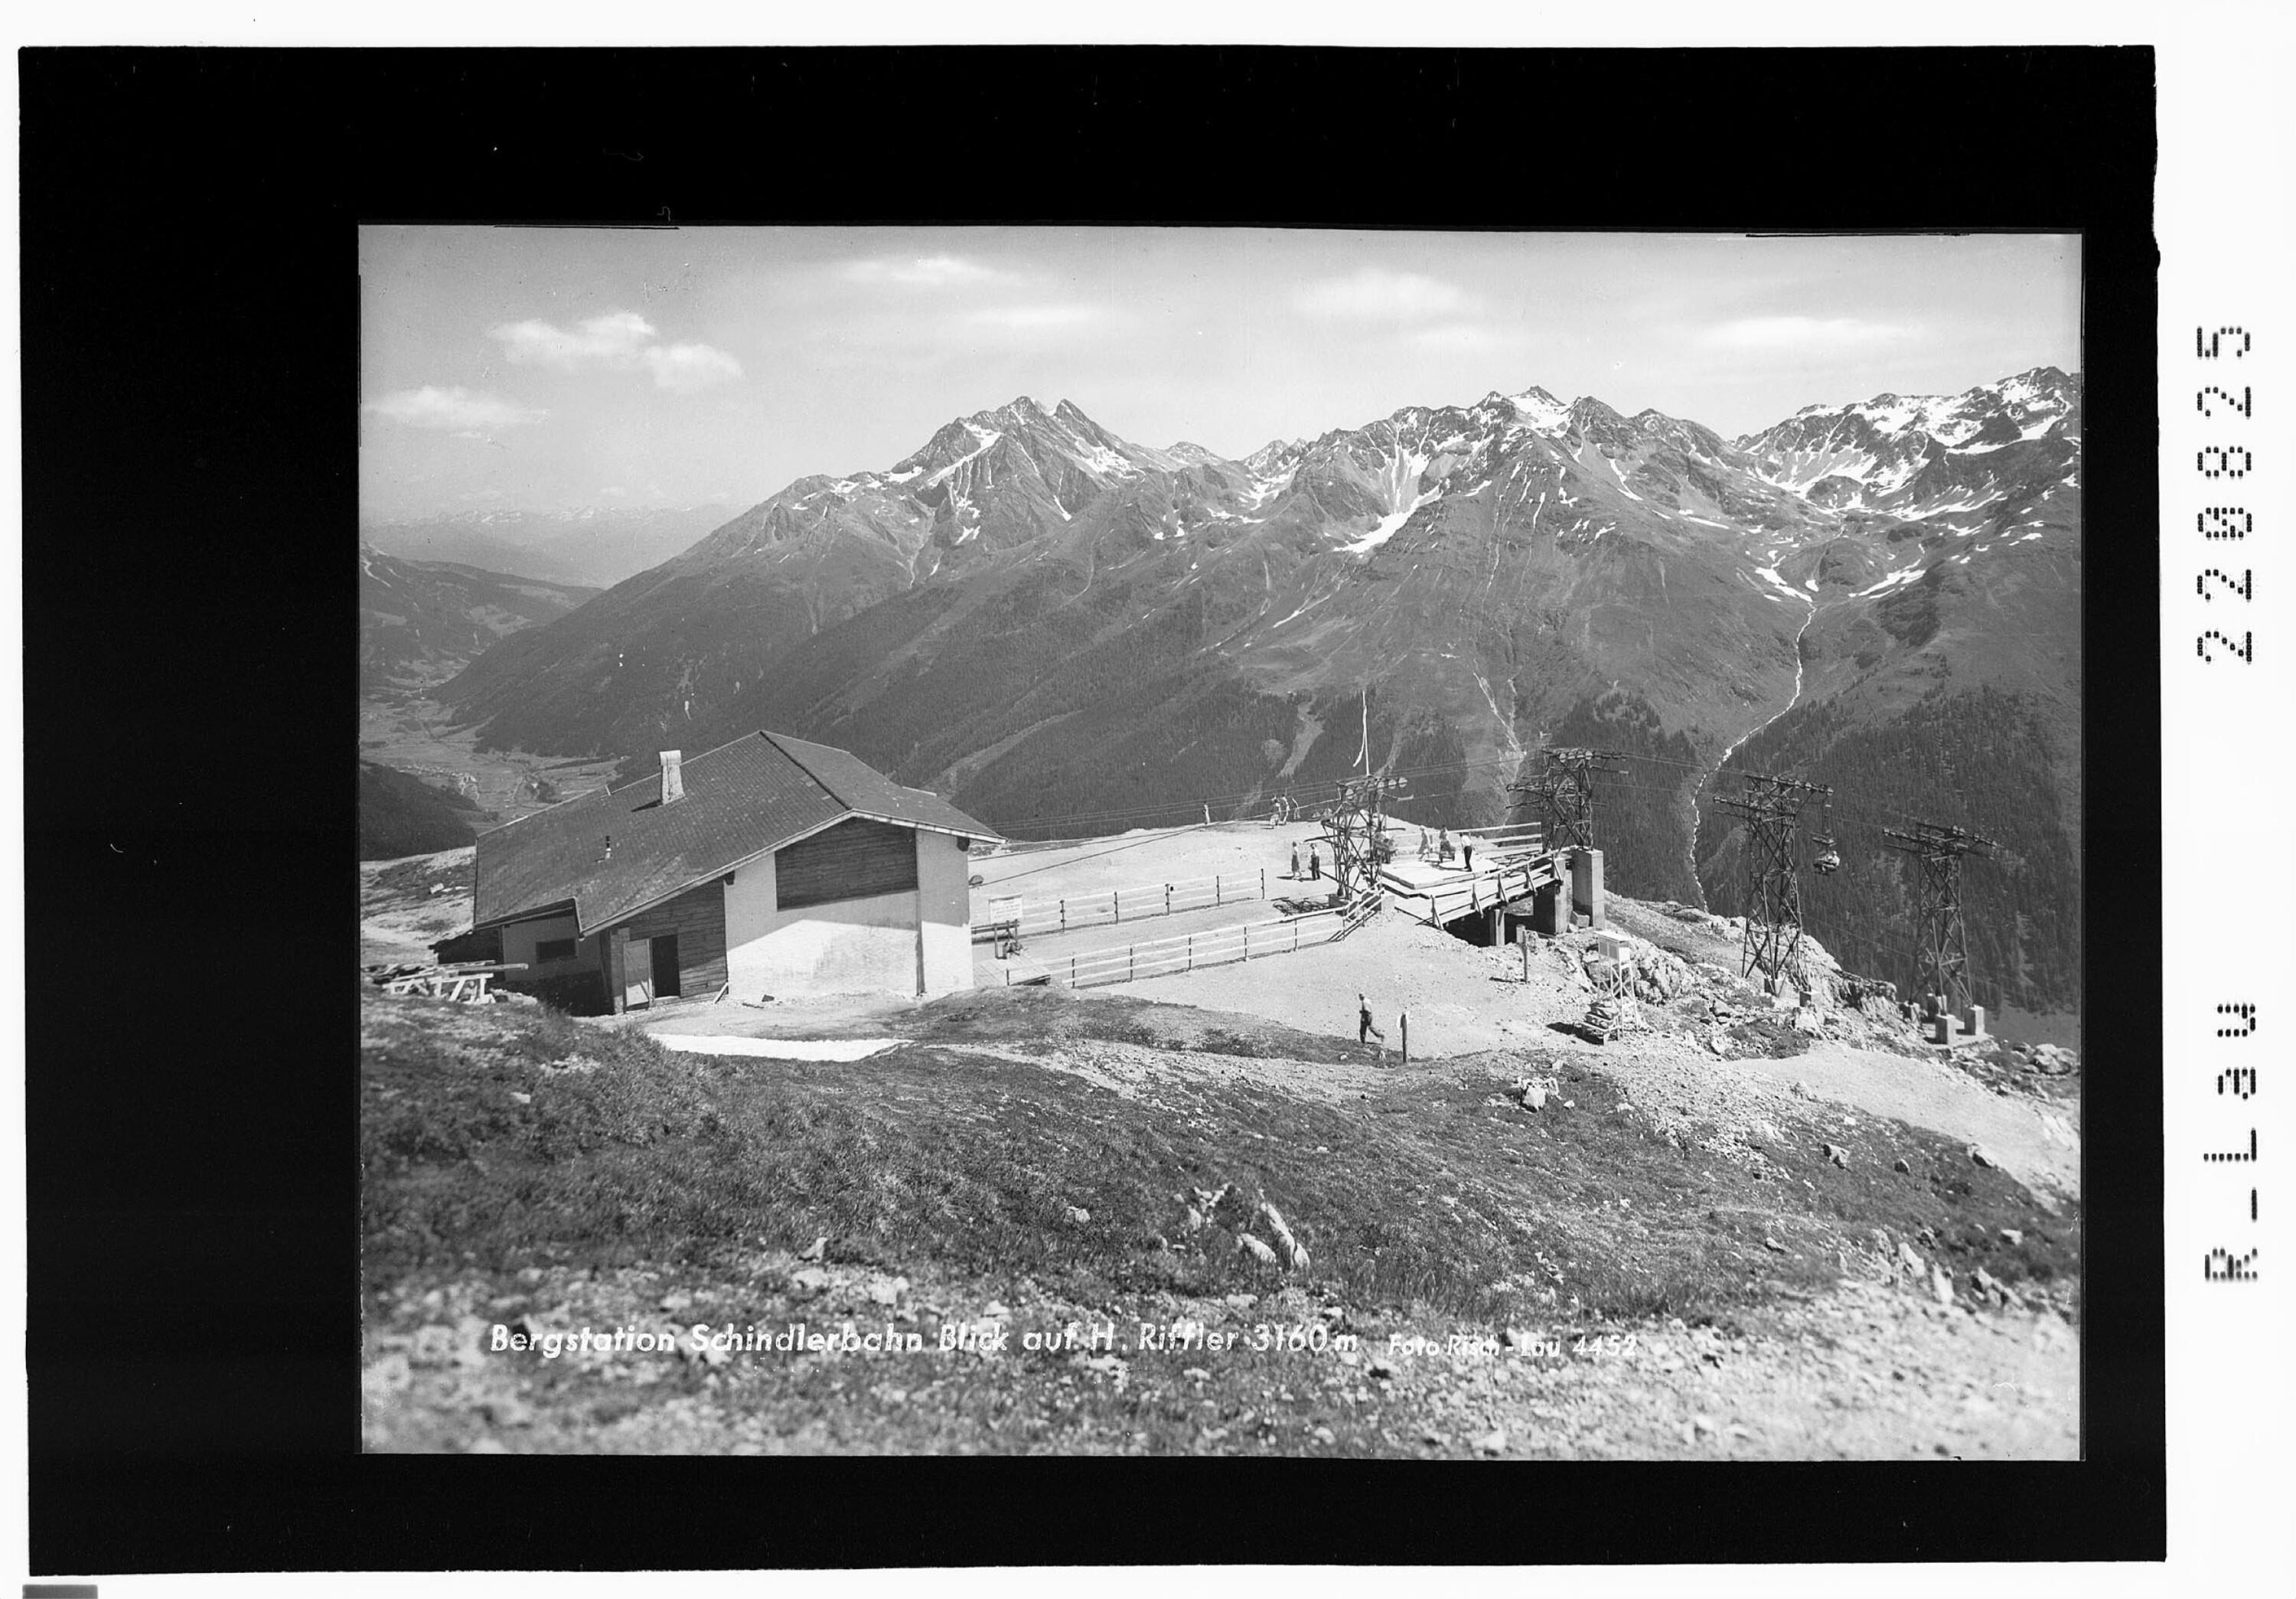 Bergstation Schindlerbahn mit Blick auf Hohen Riffler 3160 m></div>


    <hr>
    <div class=